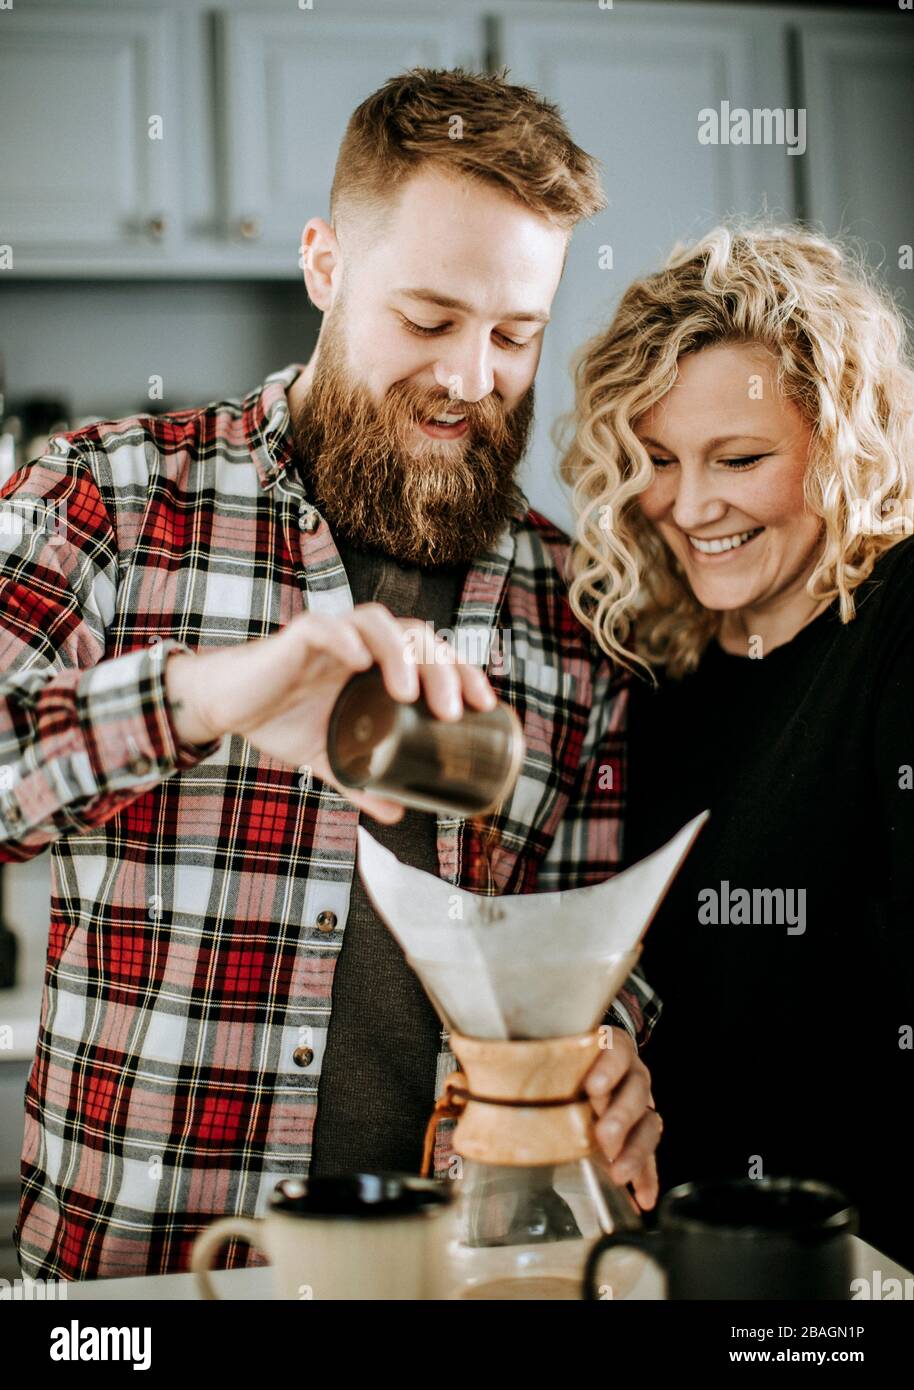 Mann und Frau lächeln, während sie sich darauf vorbereiten, einen Kaffee zu übergießen Stockfoto